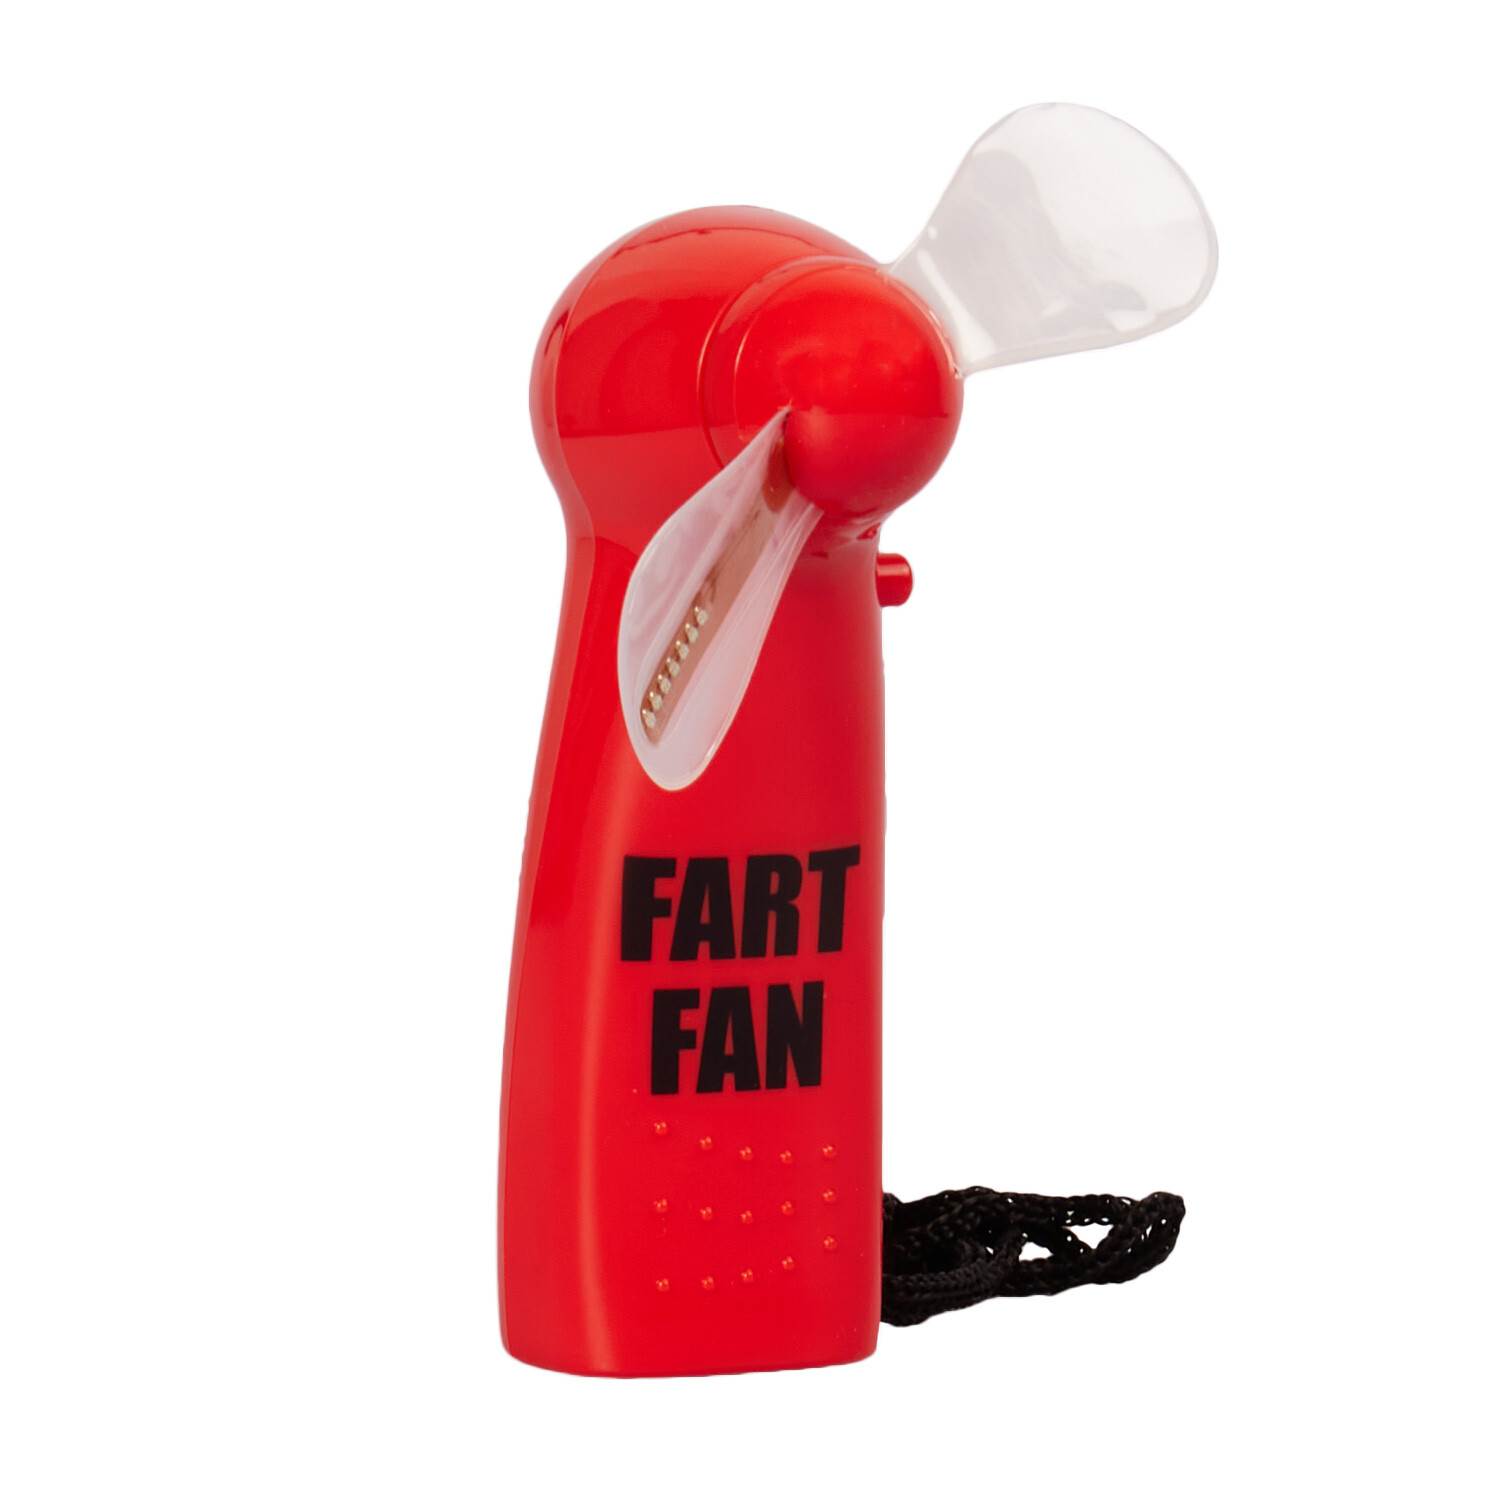 Fart Fan Image 2